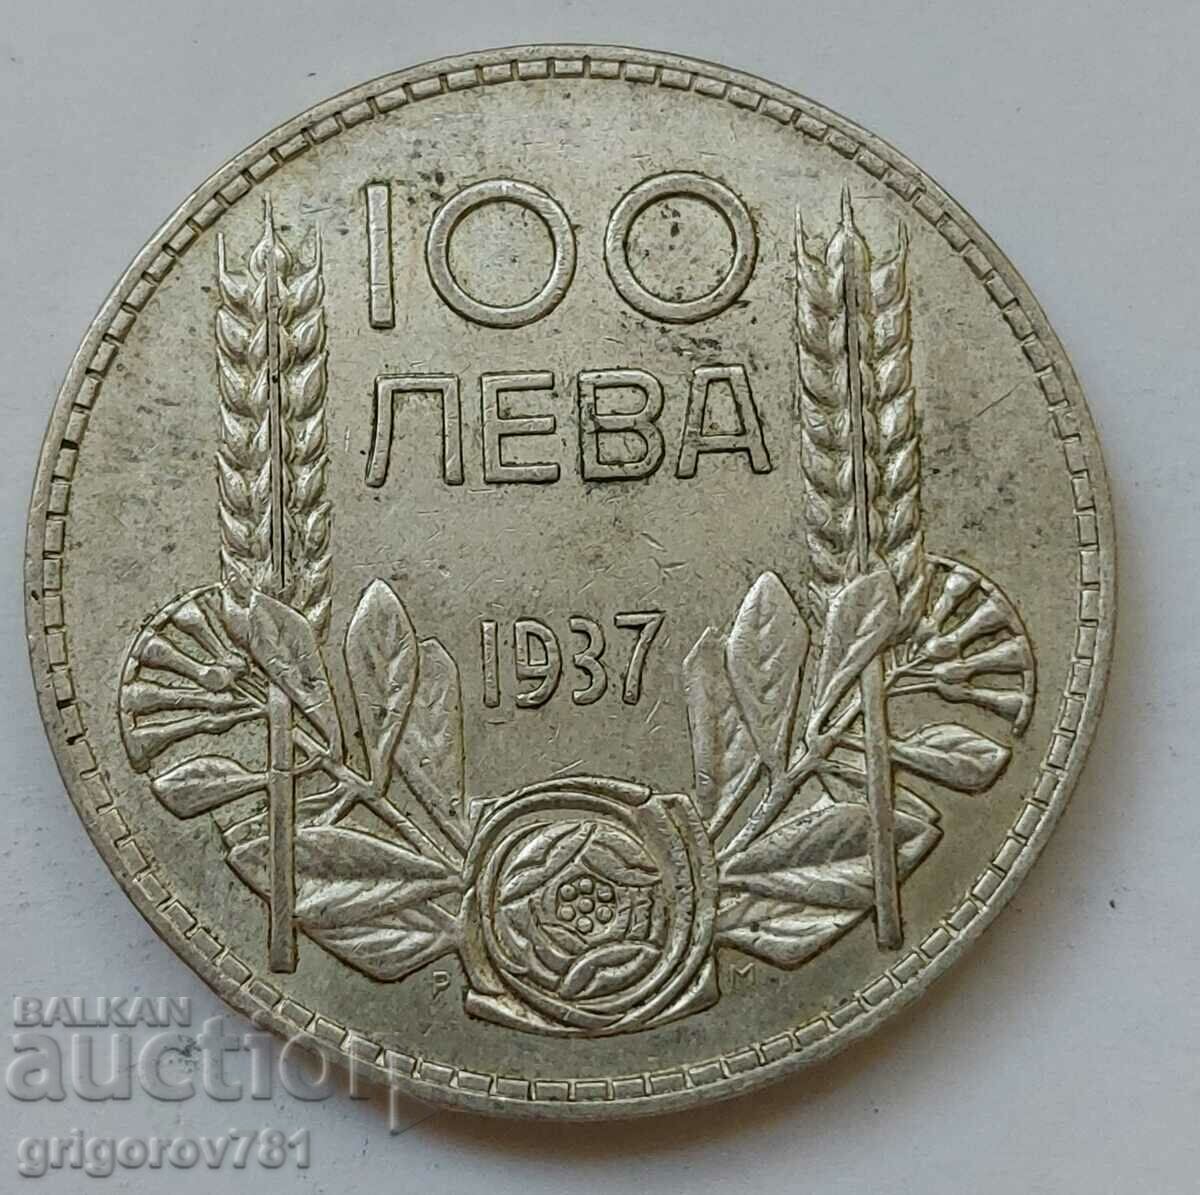 100 leva argint Bulgaria 1937 - monedă de argint #109